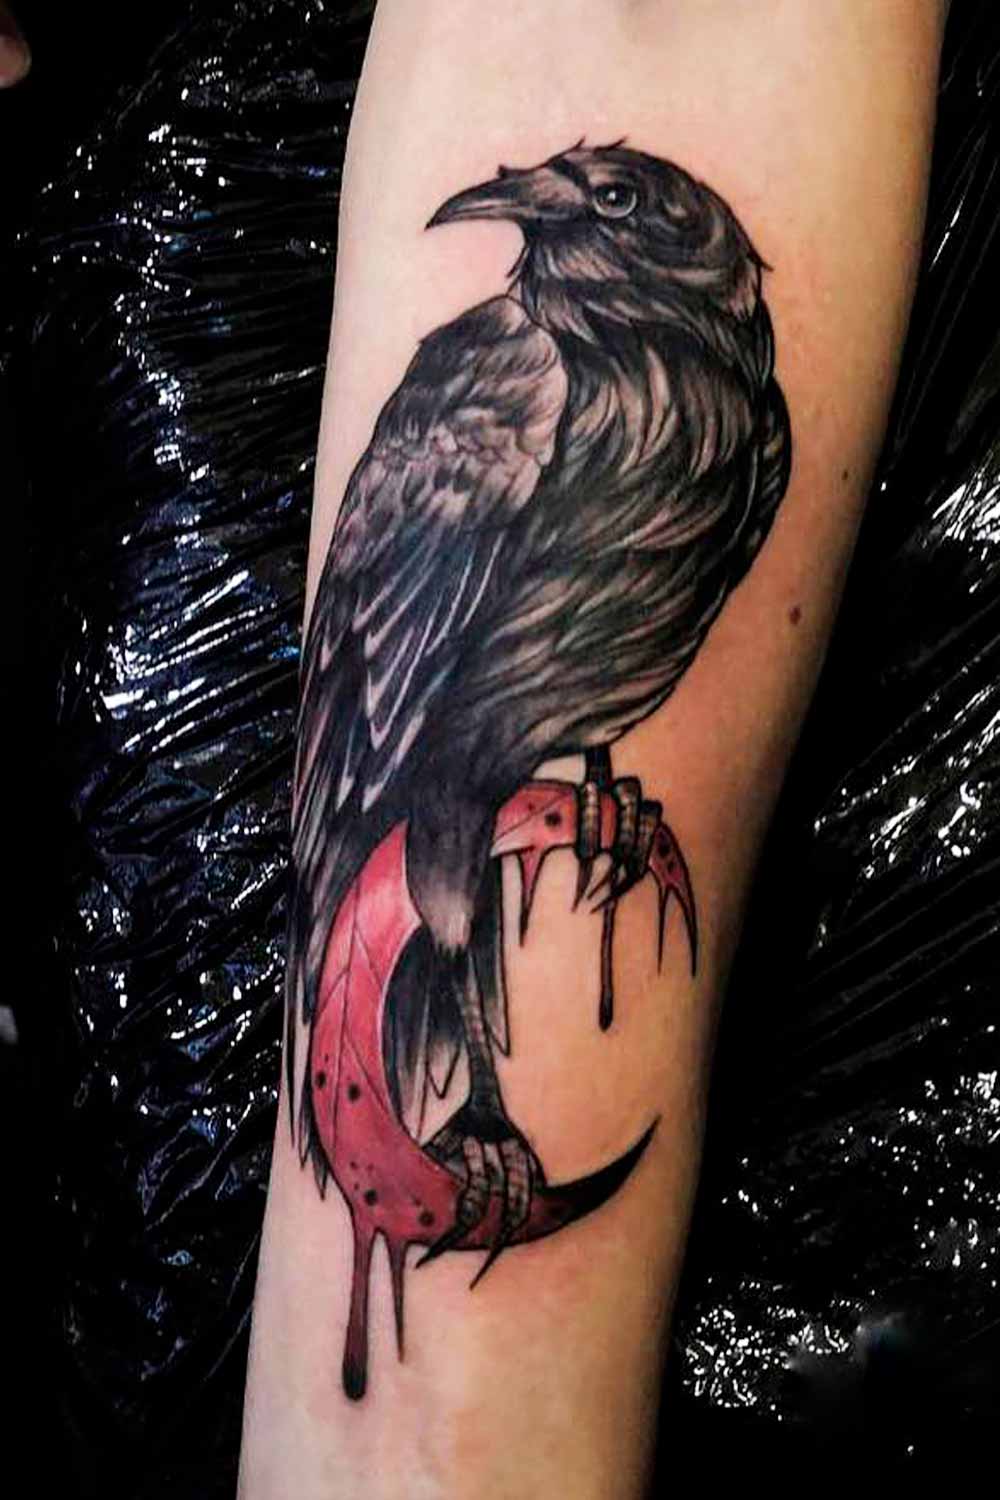 Crow Tattoo #tattoosformen #menstattoos #tattoo